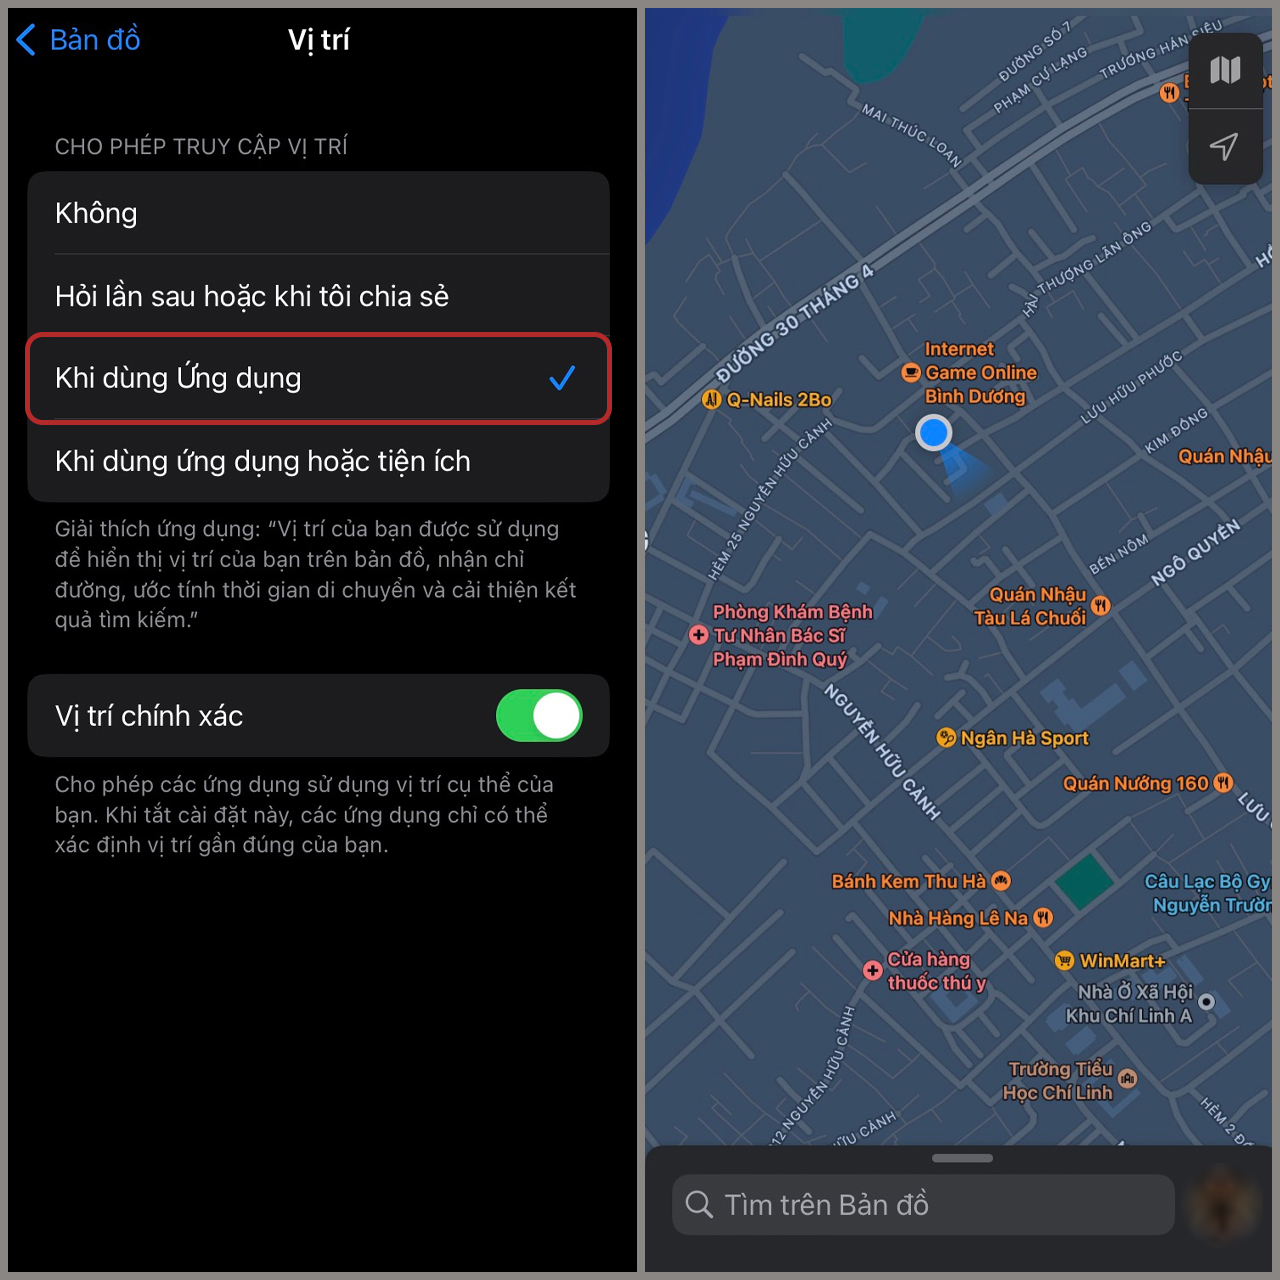 Sử dụng vị trí hiện tại trên iPhone để dễ dàng tìm đường đến những địa điểm yêu thích. Với tính năng GPS chính xác cùng bản đồ đẹp mắt, chỉ cần bấm và đợi, bạn sẽ nhận được chỉ dẫn trong tích tắc.